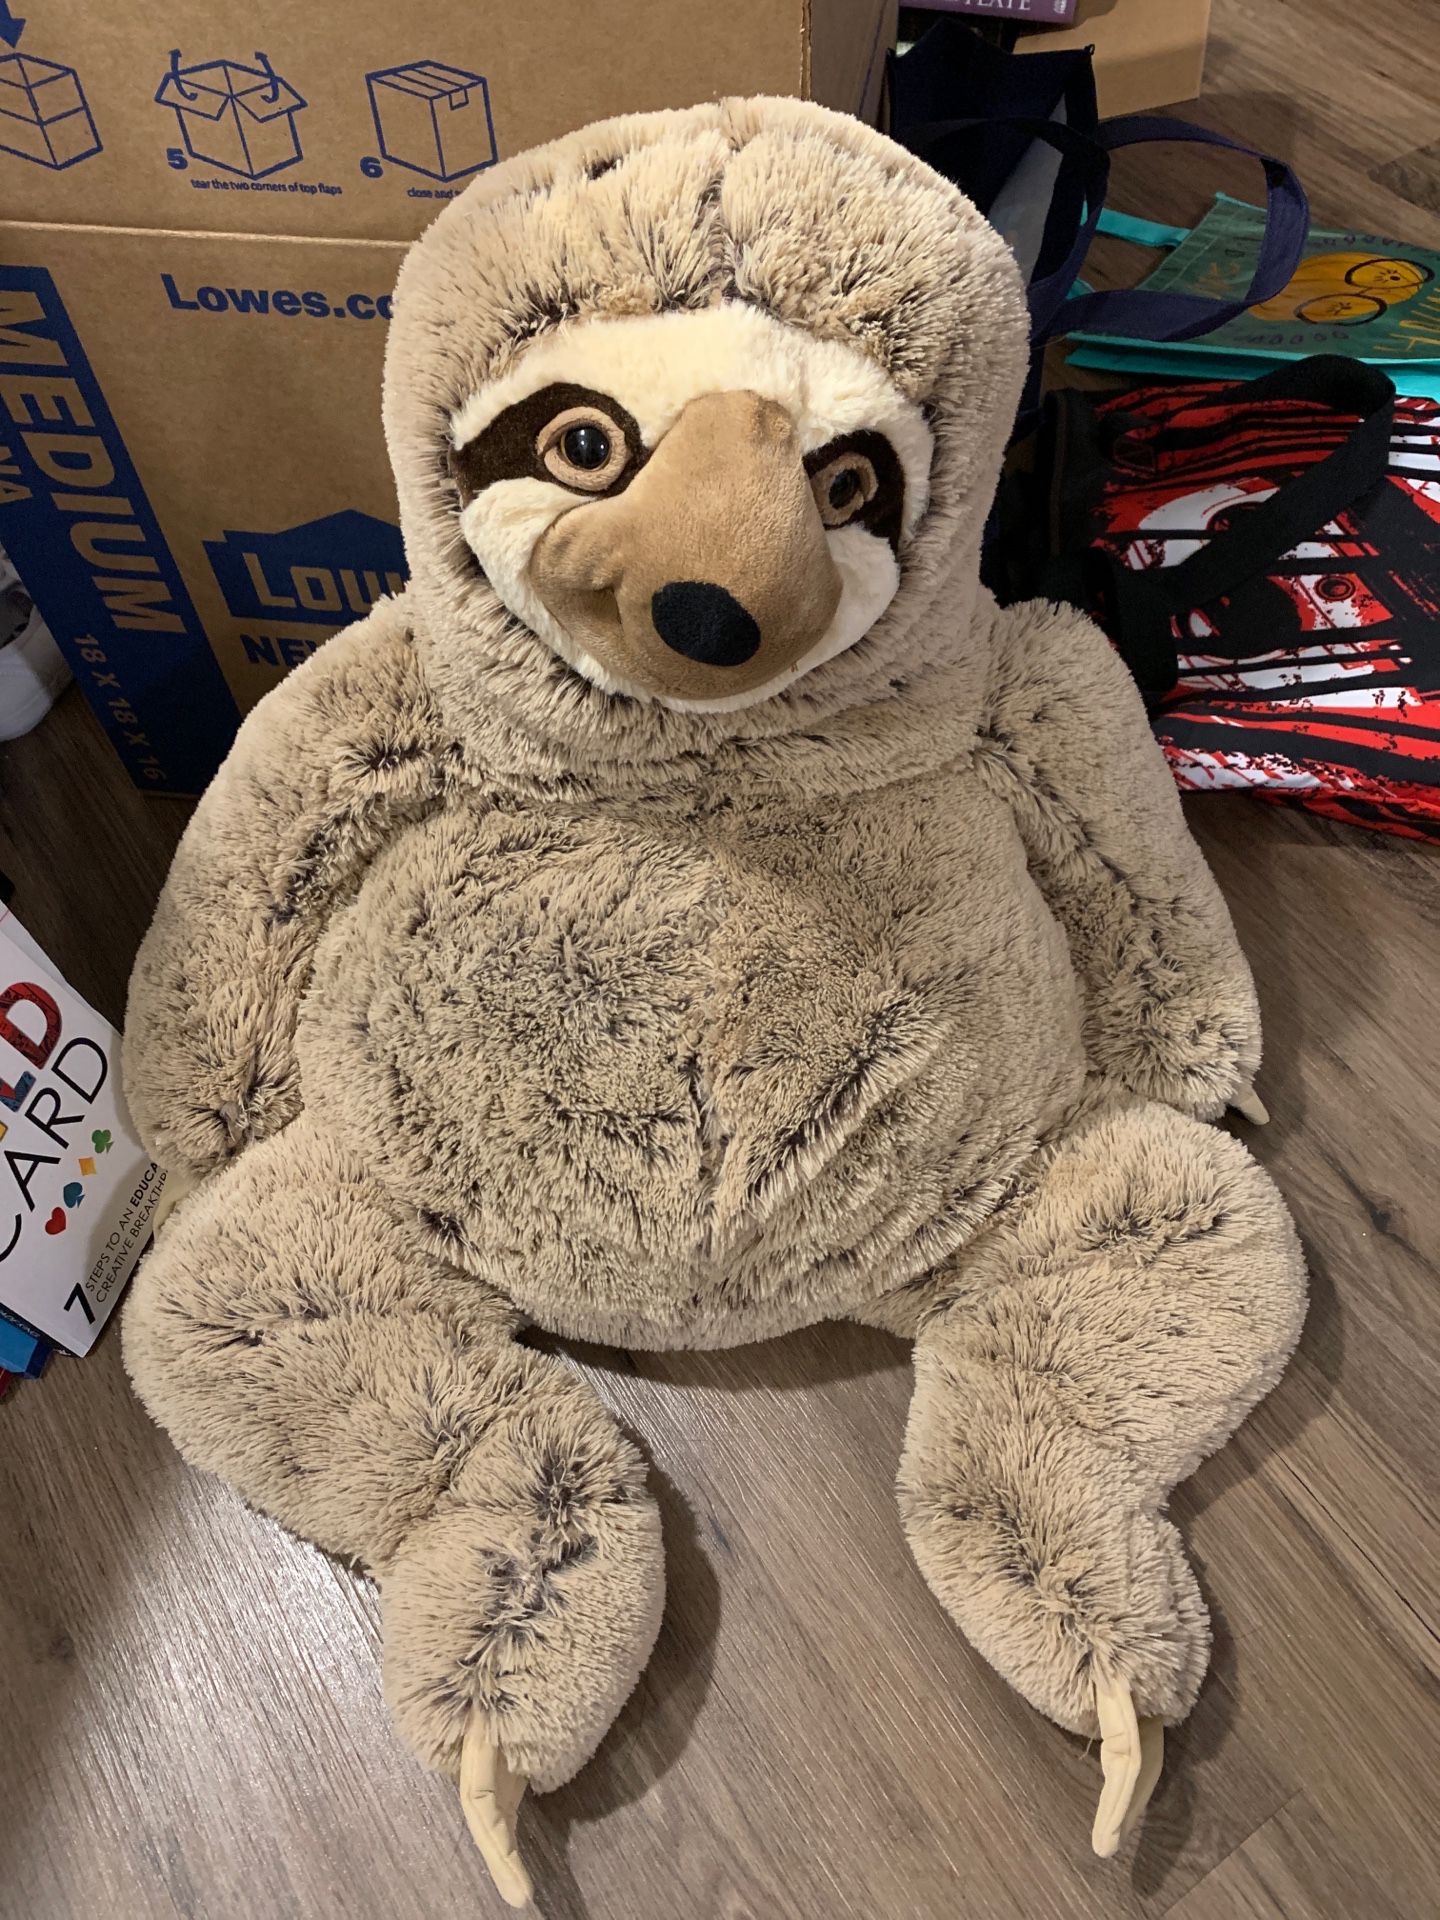 Giant Sloth stuffed animal